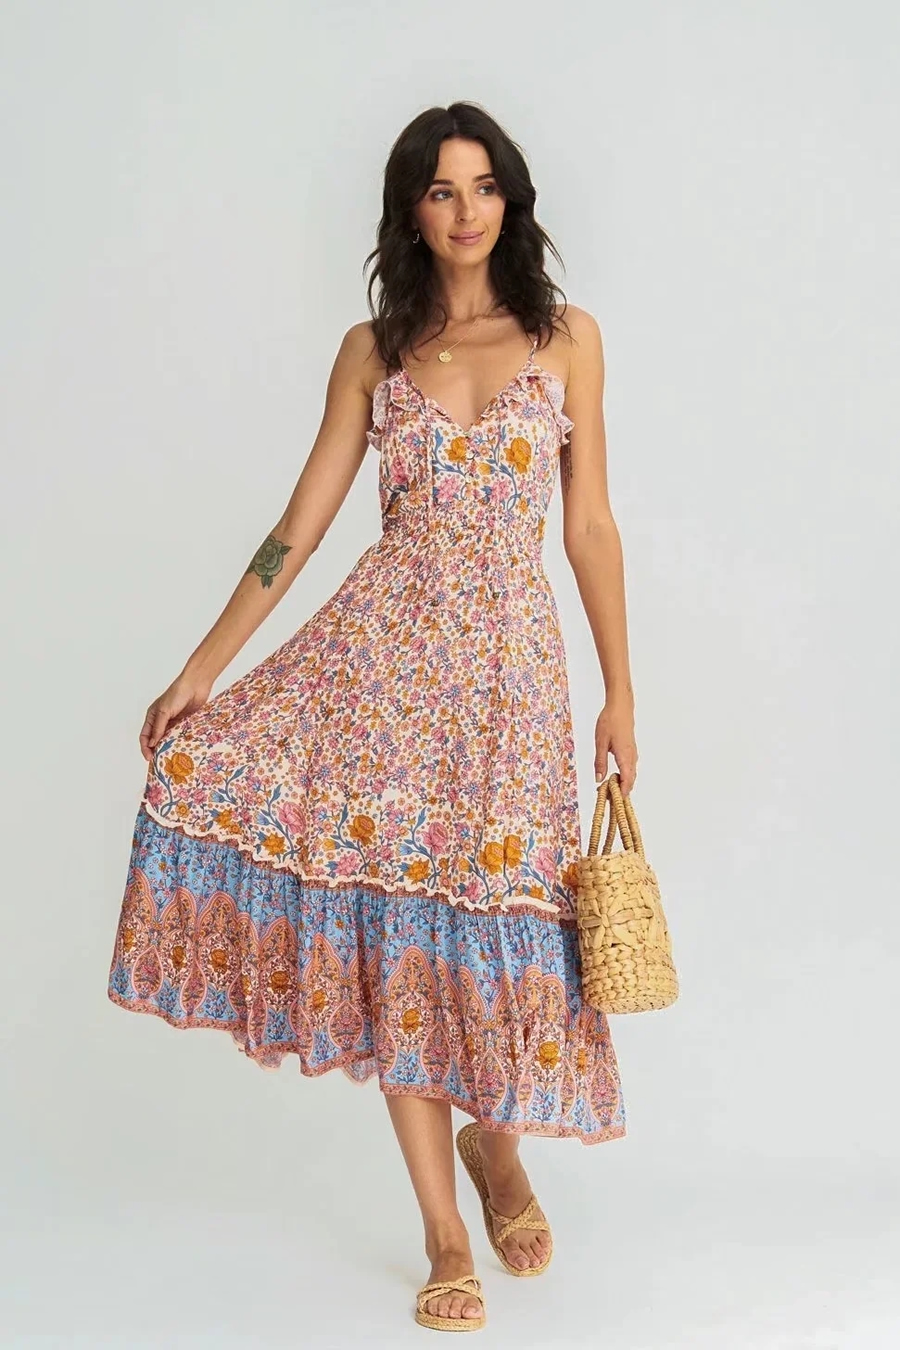 Fashion Pink Rayon Print Ruffled Slip Dress,Long Dress